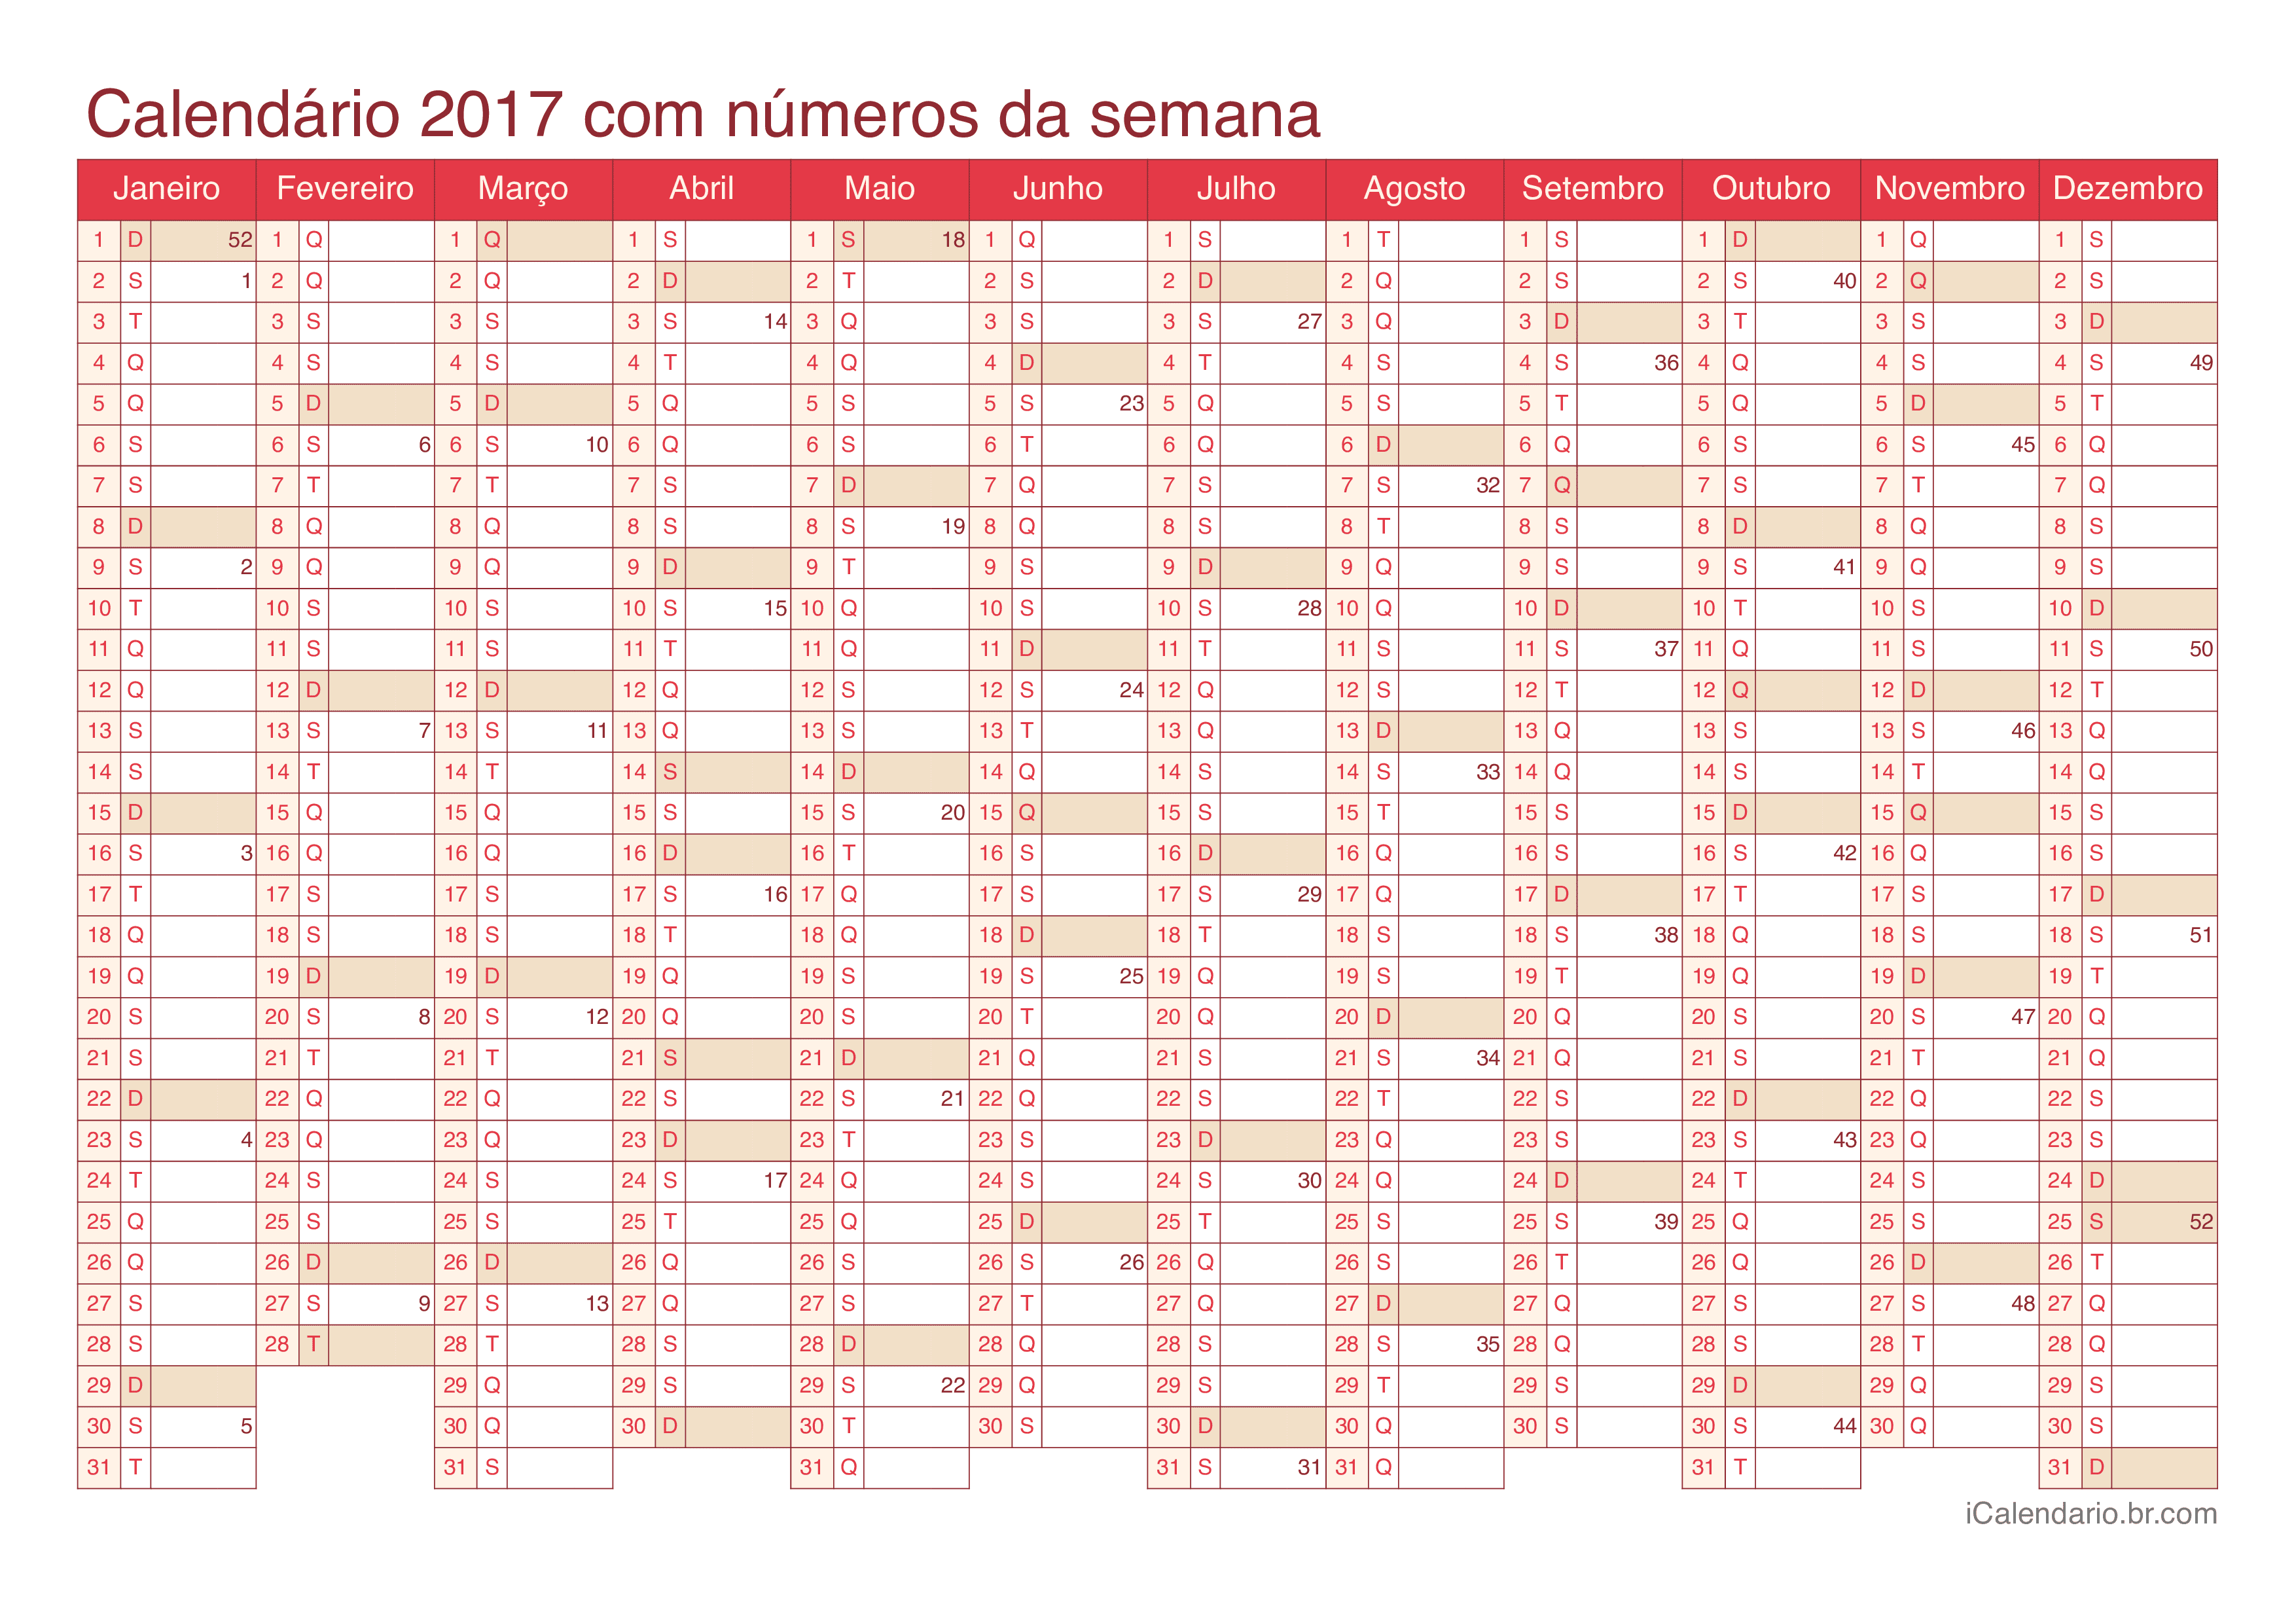 Calendário 2017 com números da semana - Cherry